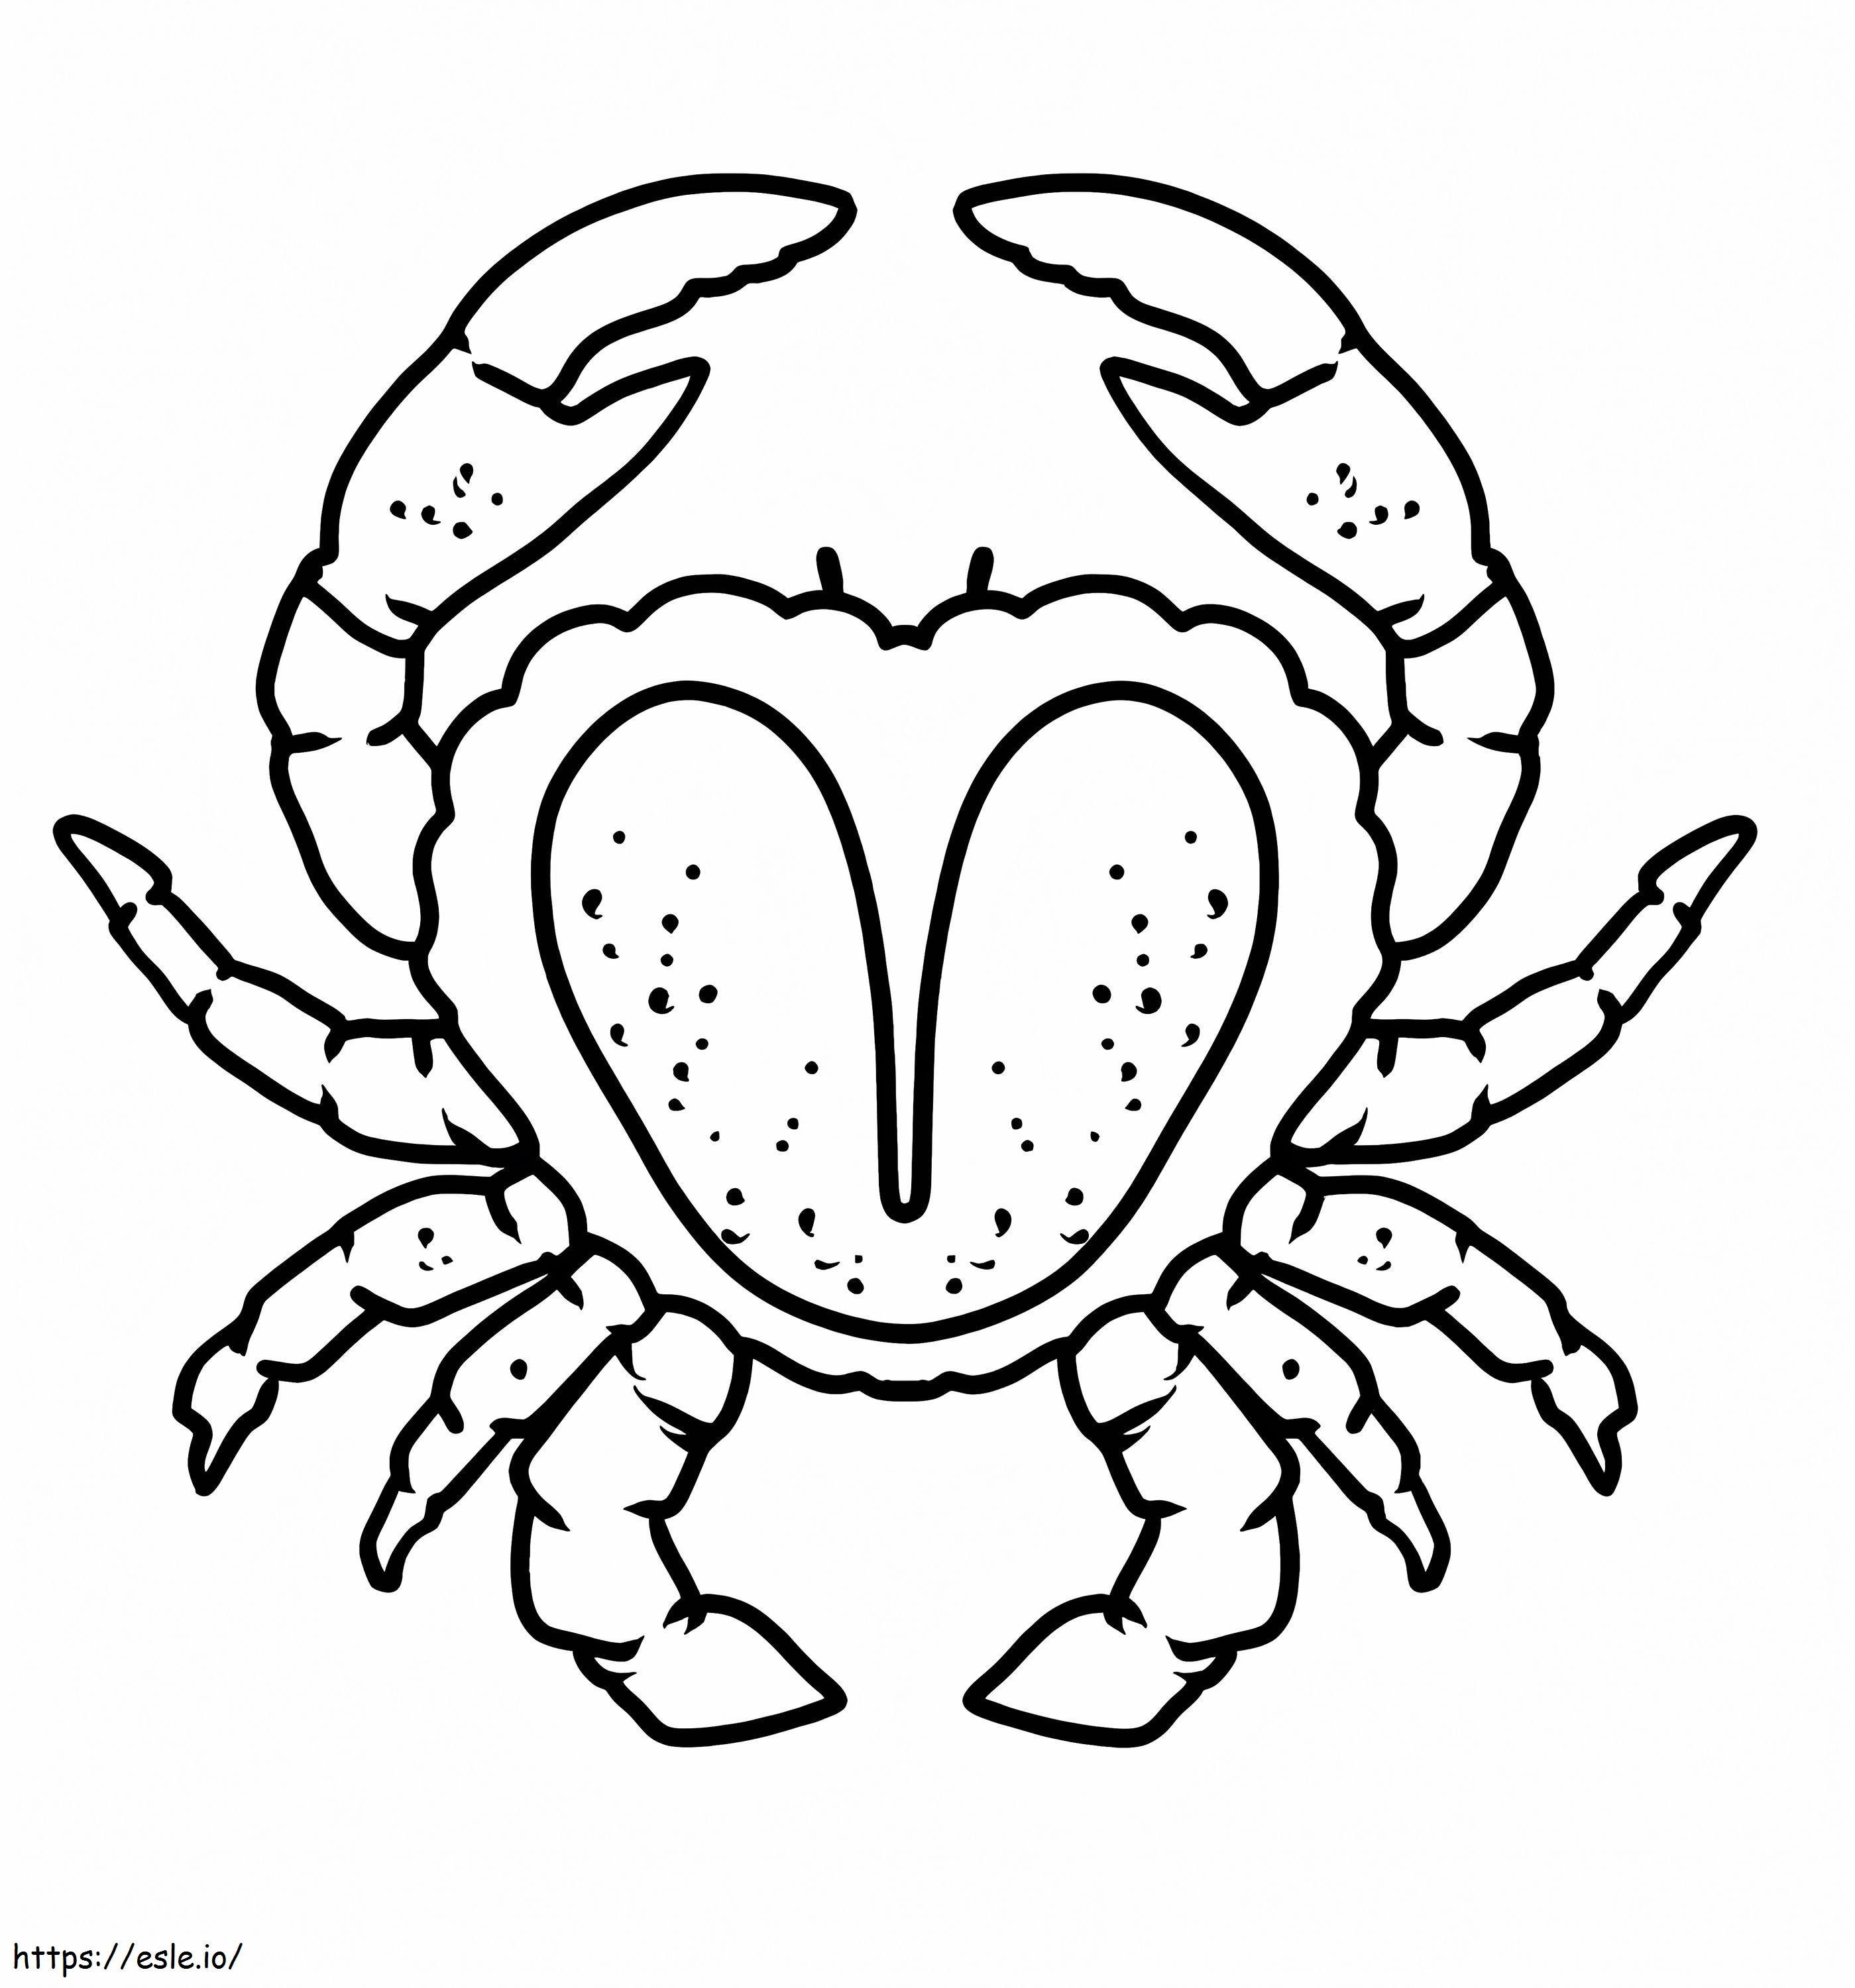 Coloriage Crabe incroyable à imprimer dessin